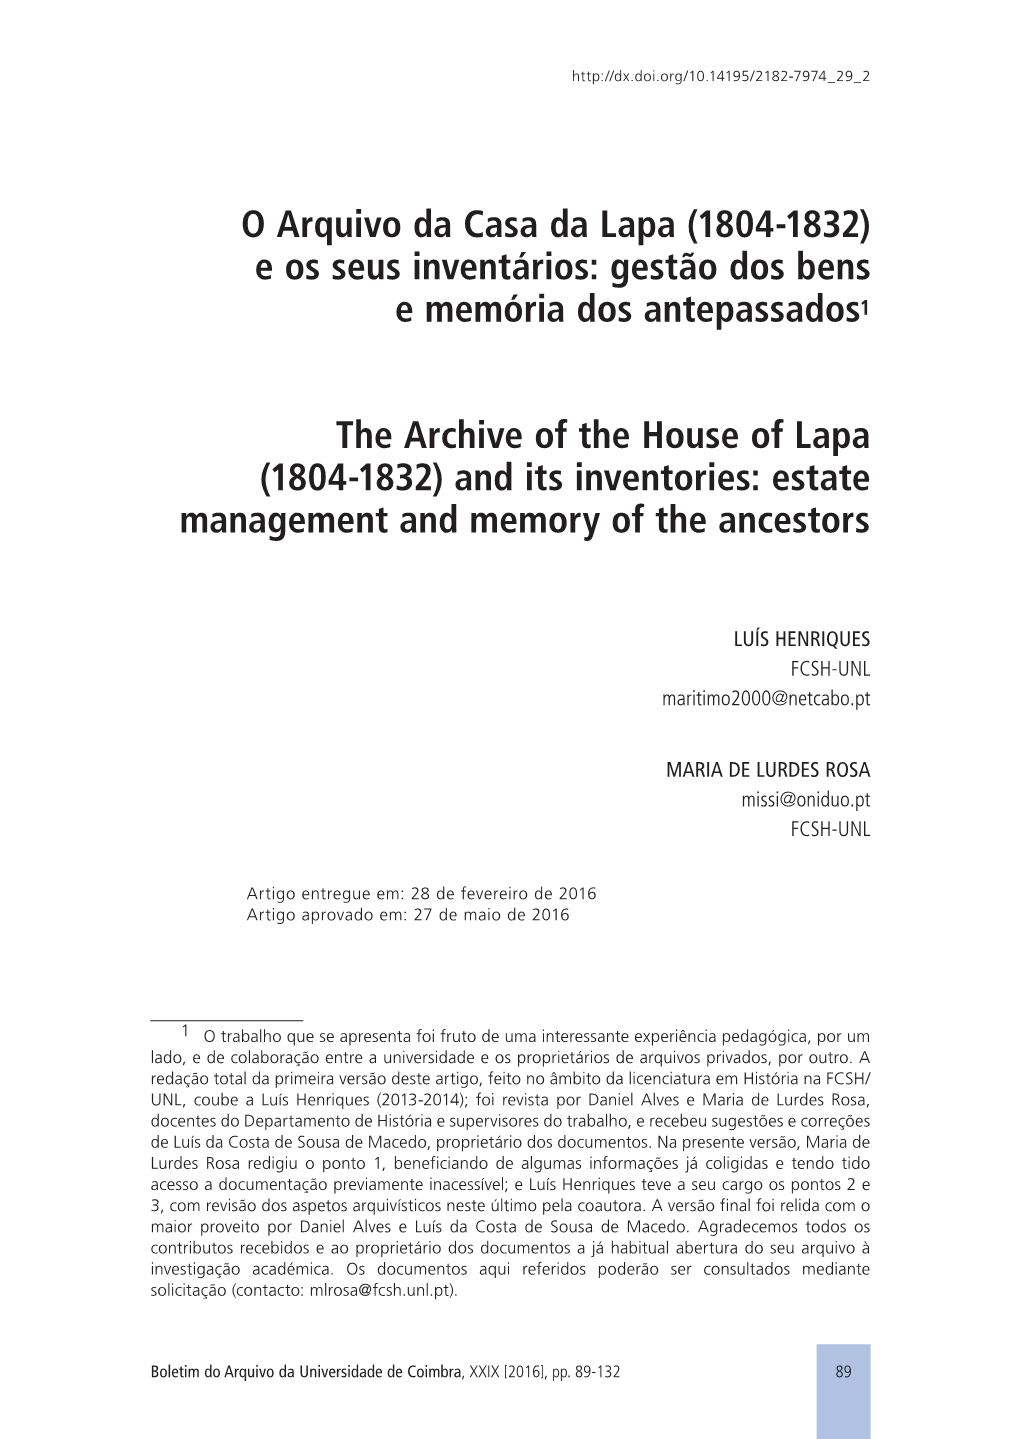 O Arquivo Da Casa Da Lapa (1804-1832) E Os Seus Inventários: Gestão Dos Bens E Memória Dos Antepassados1